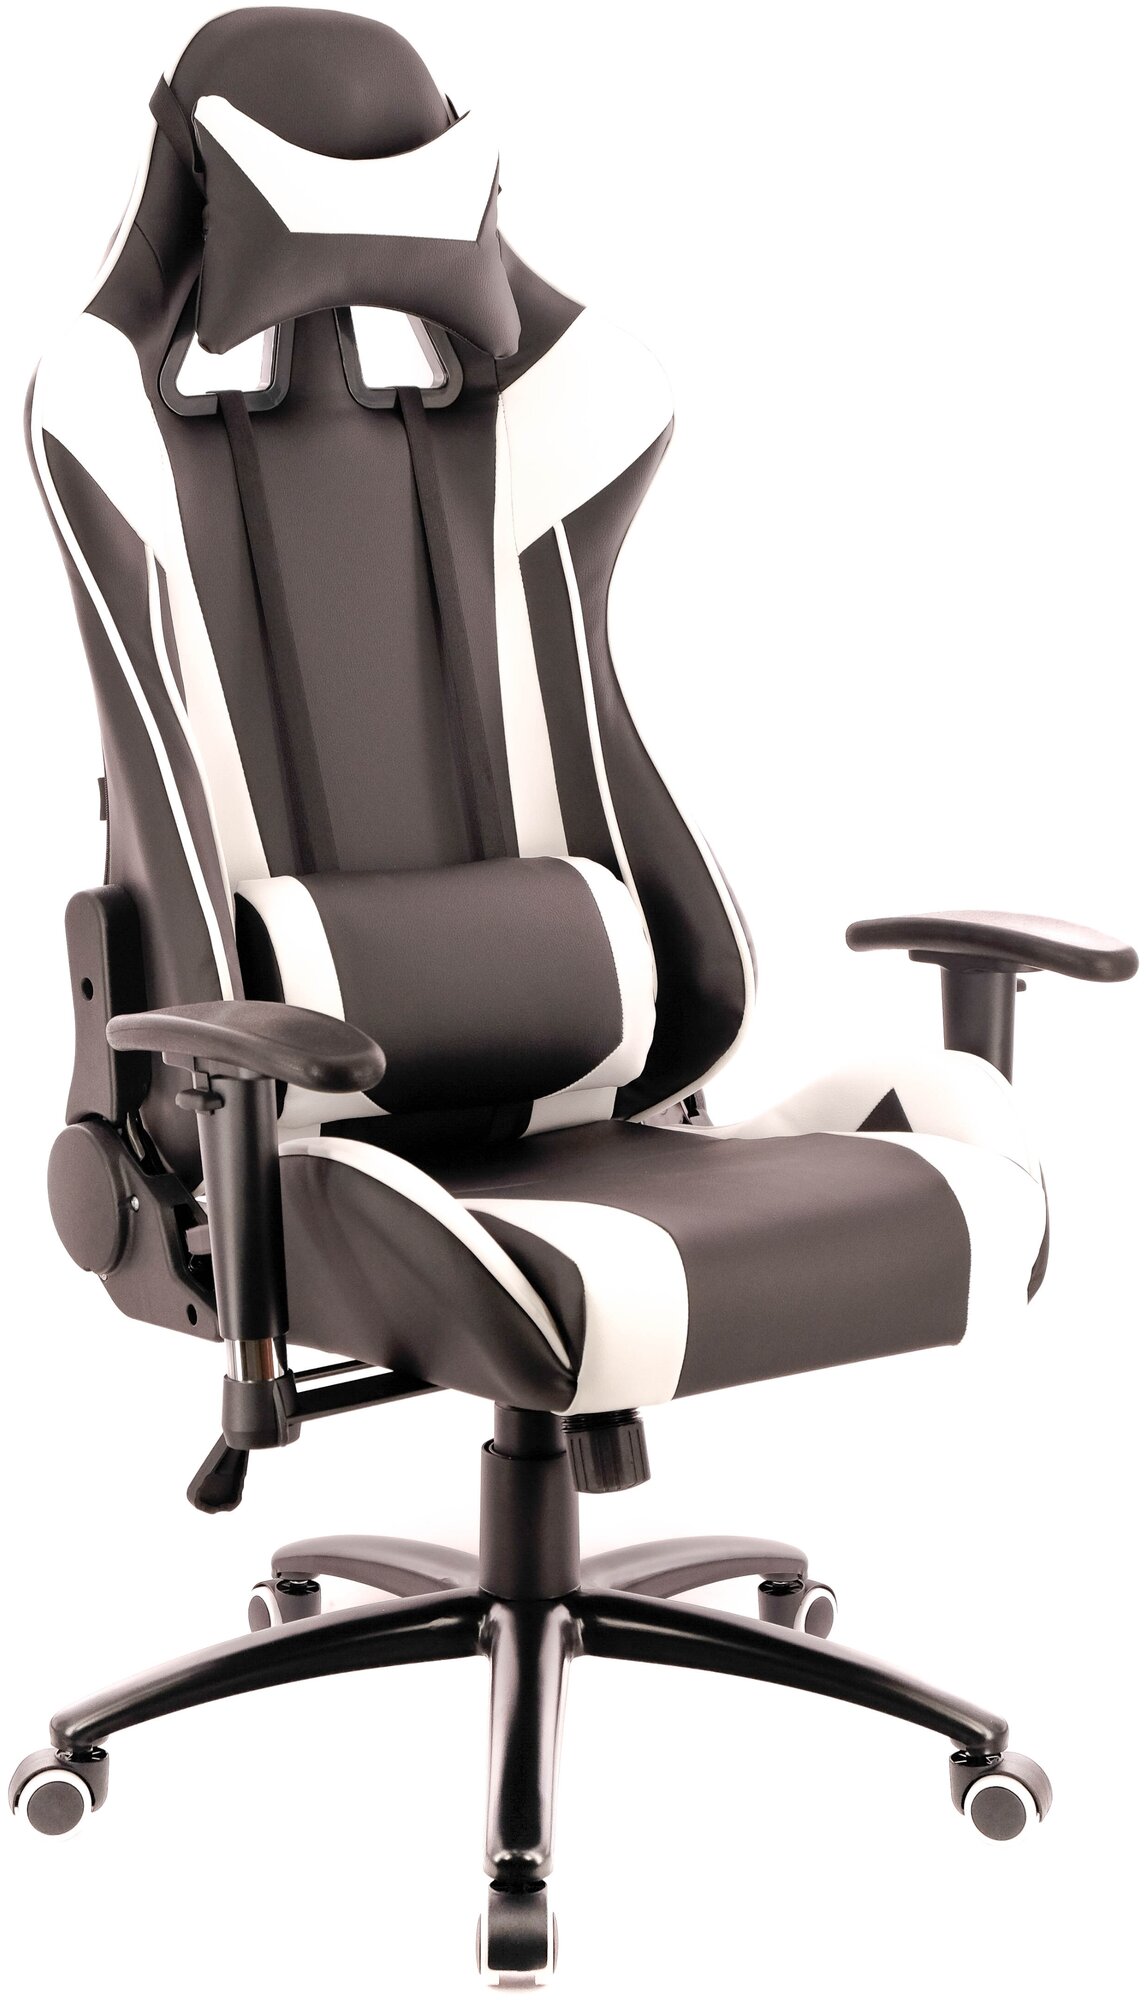 Компьютерное кресло Everprof Lotus S6 игровое, обивка: искусственная кожа, цвет: черный/белый